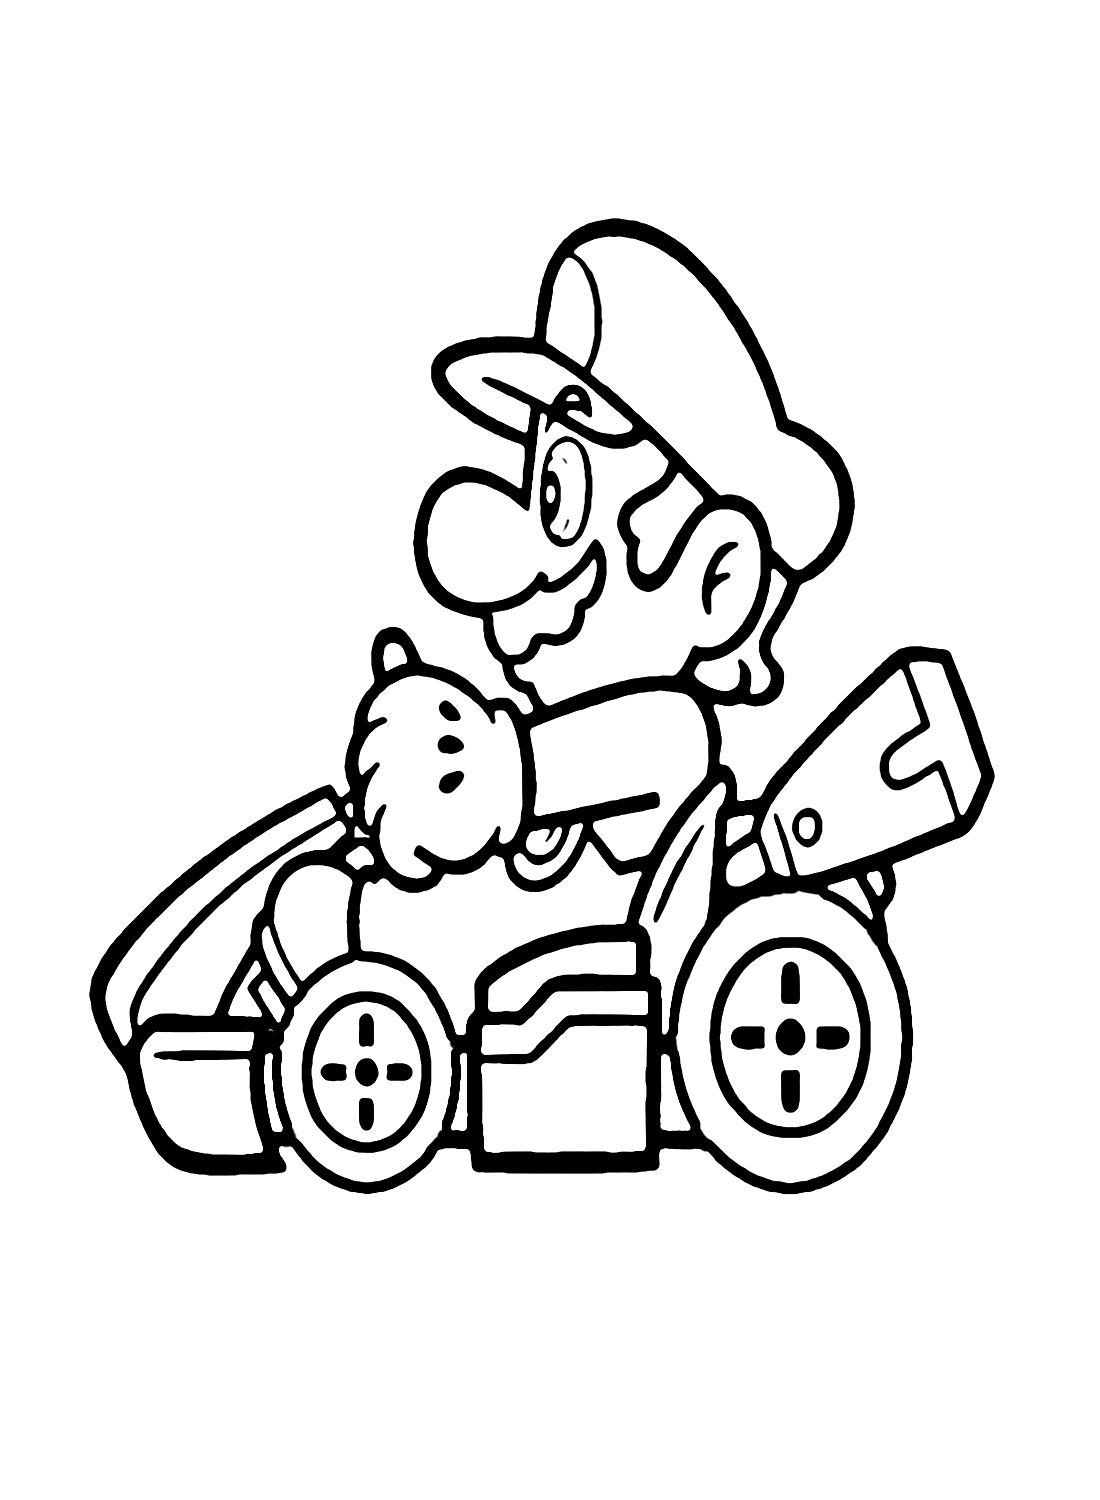 Mario dans Mario Kart de Mario Kart